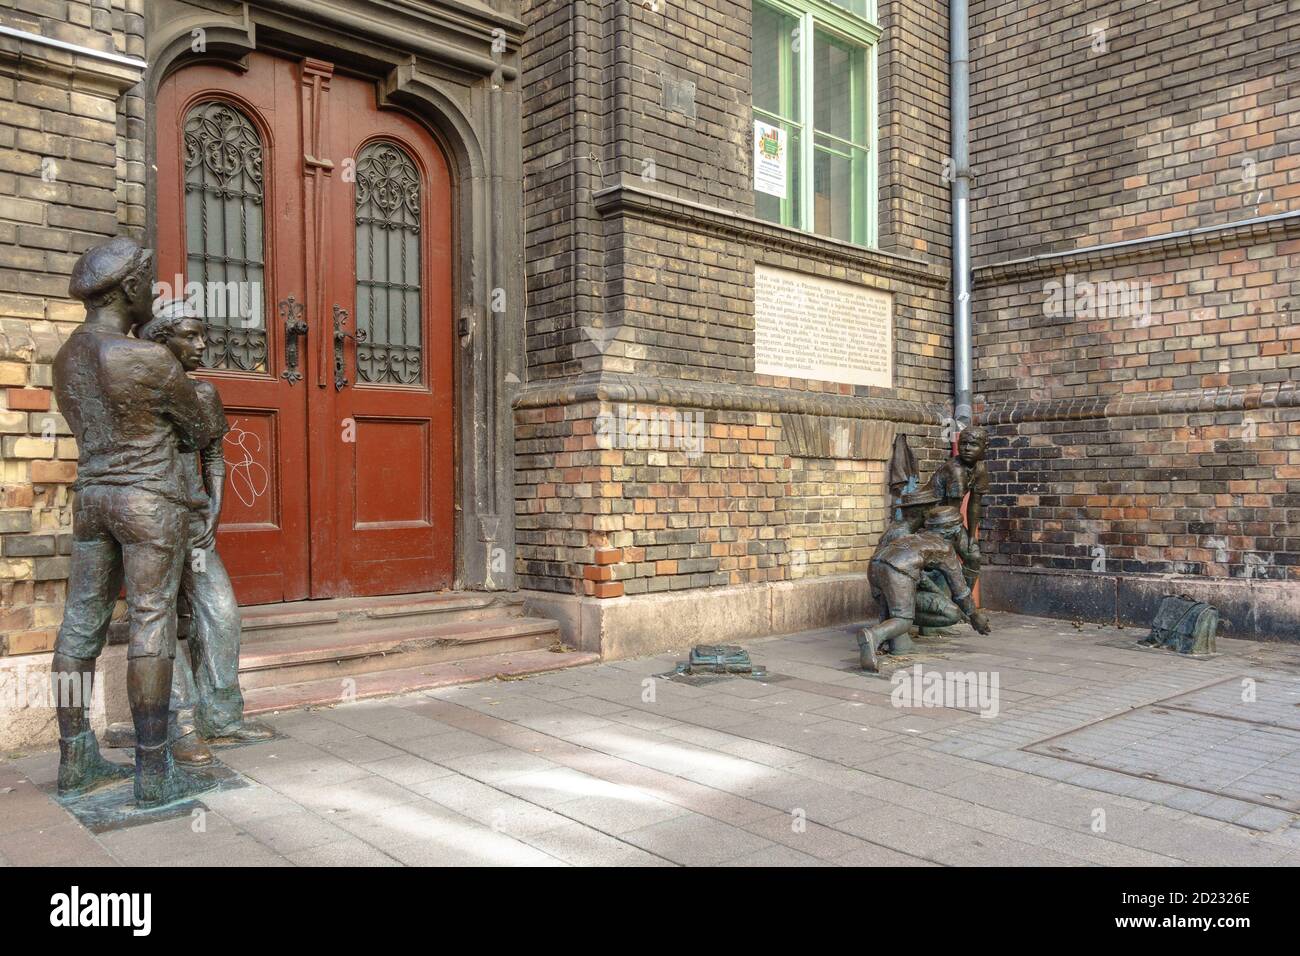 Un groupe de statues représentant les Paul Street Boys (PAL utcai fiuk) Du roman de Ference Molnar à Budapest Banque D'Images